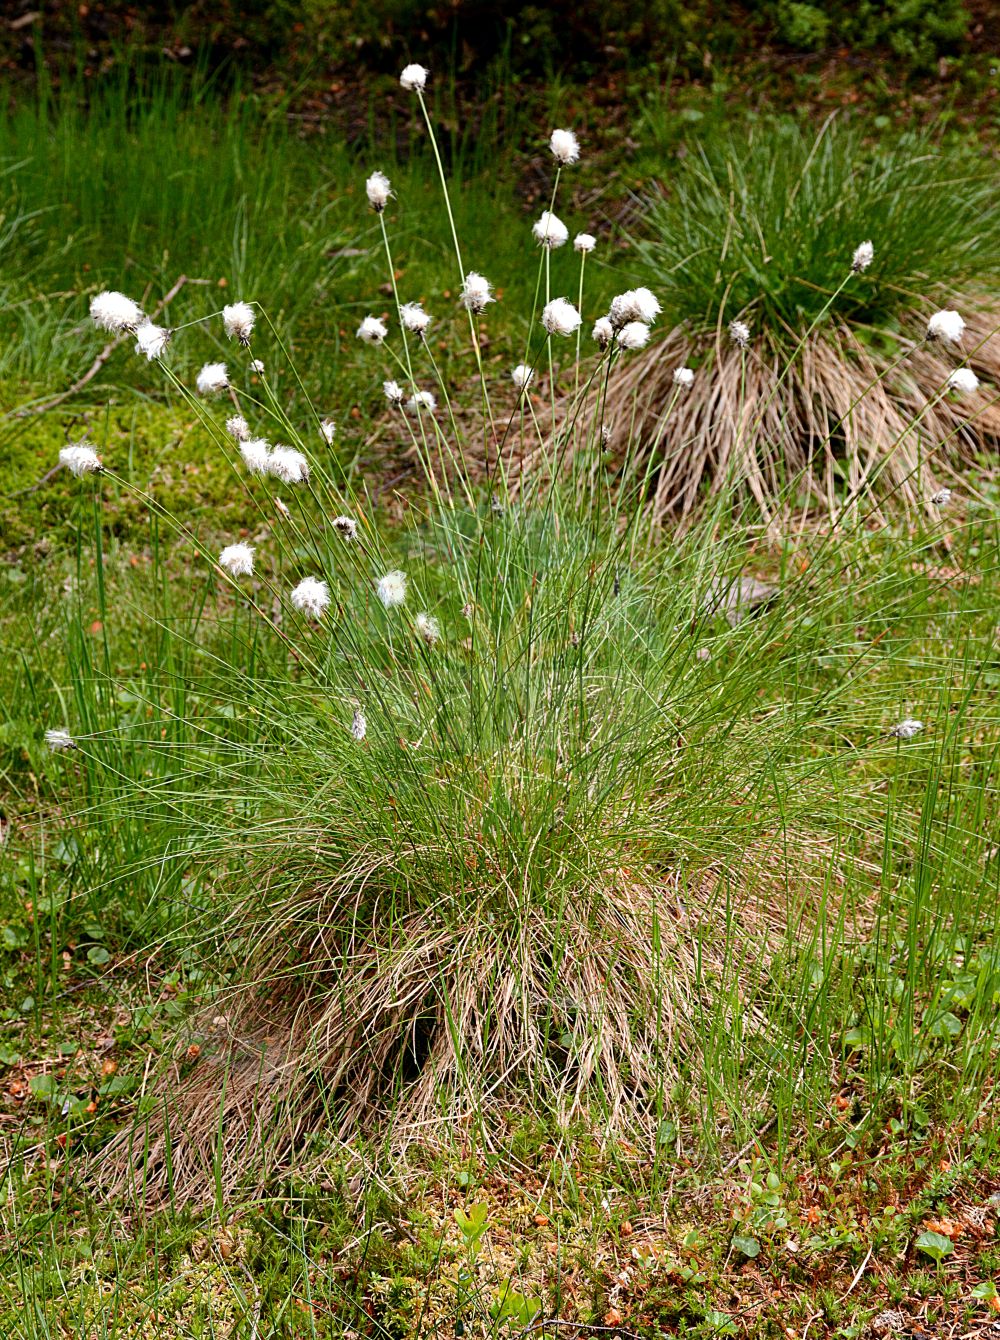 Foto von Eriophorum vaginatum (Scheiden-Wollgras - Hare's-tail Cottongrass). Das Foto wurde in Oberhof, Thüringen, Deutschland aufgenommen. ---- Photo of Eriophorum vaginatum (Scheiden-Wollgras - Hare's-tail Cottongrass). The picture was taken in Oberhof, Thuringia, Germany.(Eriophorum vaginatum,Scheiden-Wollgras,Hare's-tail Cottongrass,Eriophorum vaginatum,Scheiden-Wollgras,Moor-Wollgras,Scheidiges Wollgras,Hare's-tail Cottongrass,Harestail,Tussock Cottongrass,Eriophorum,Wollgras,Cottongrass,Cyperaceae,Sauergräser,Sedge family)